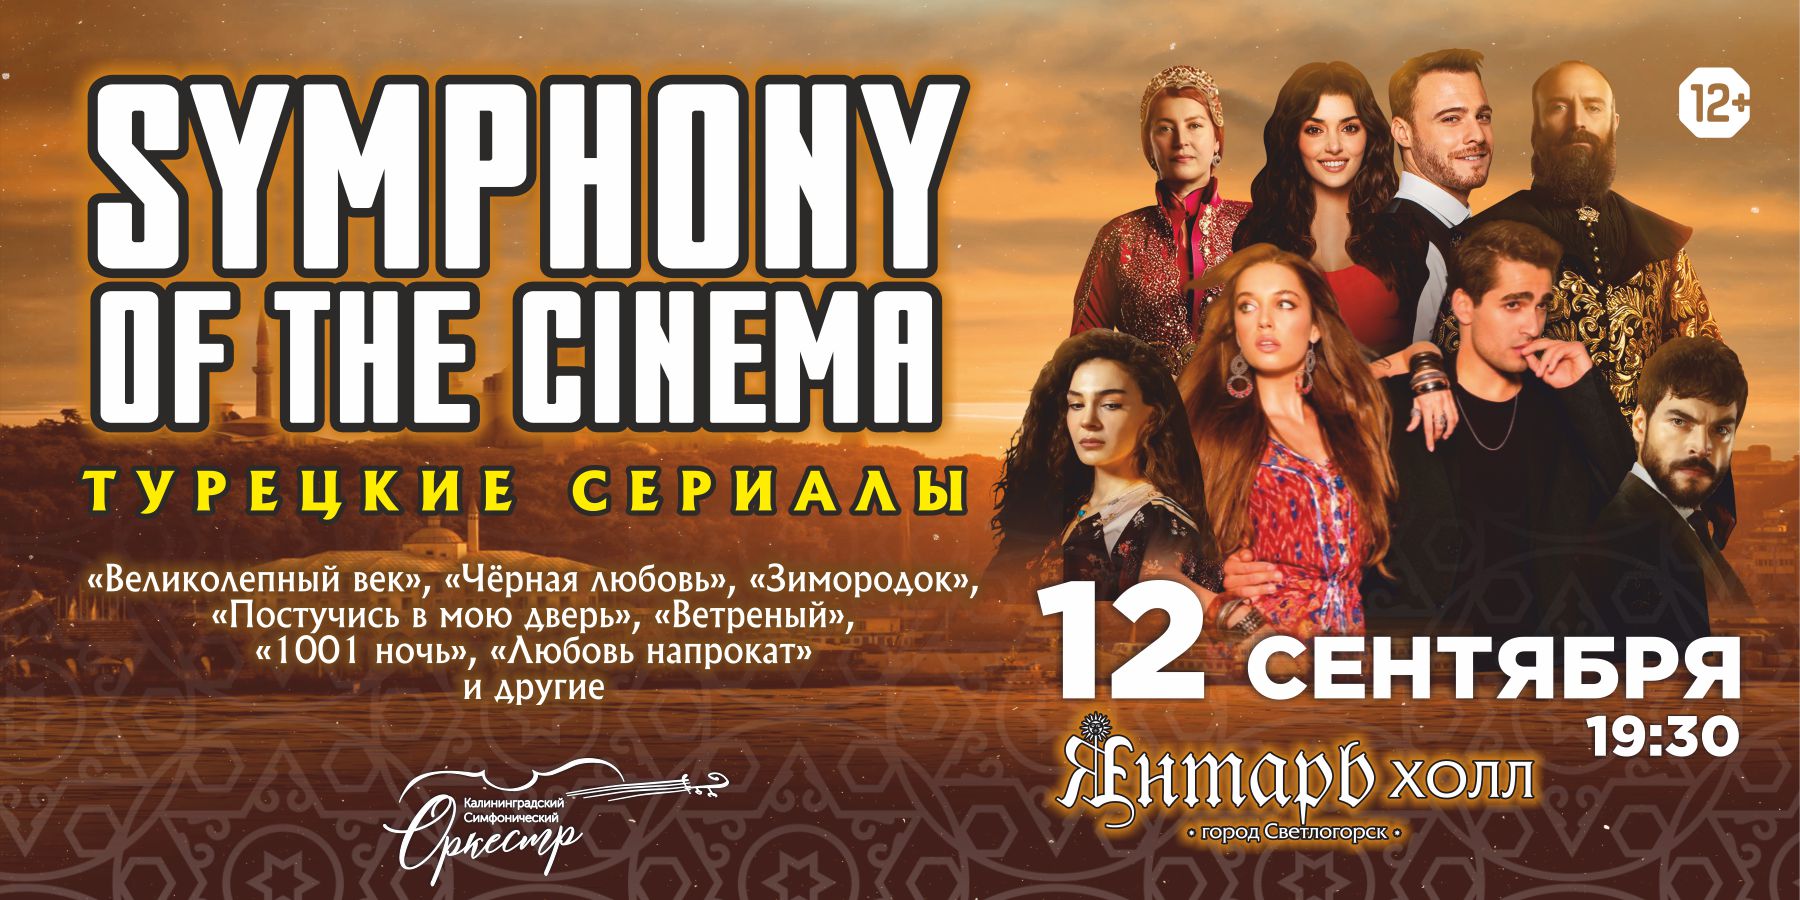 SYMPHONY OF THE CINEMA (ТУРЕЦКИЕ СЕРИАЛЫ) симфоническое шоу